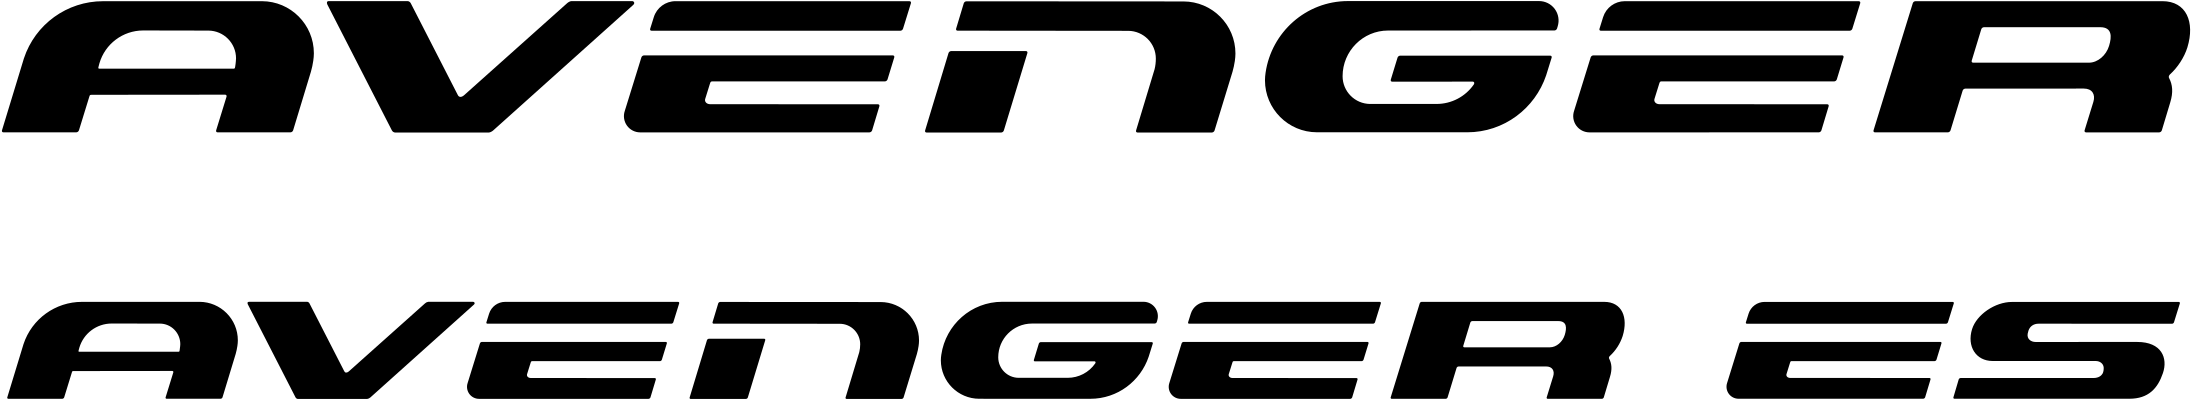 Avenger Logo Transparent PNG